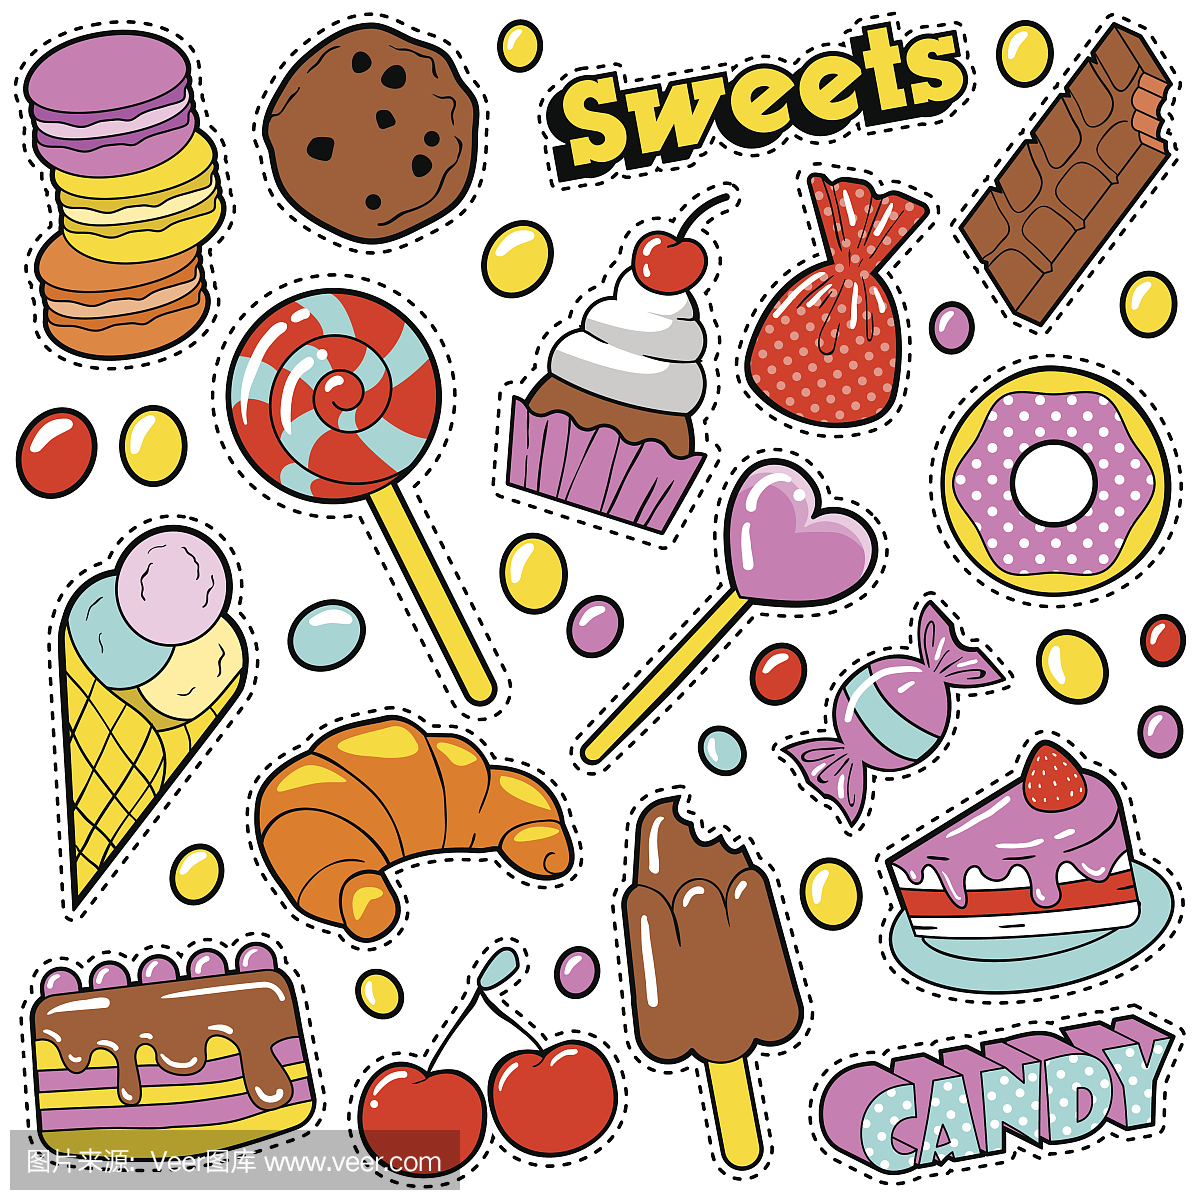 甜品食品徽章设置与补丁,贴纸,糖果,蛋糕